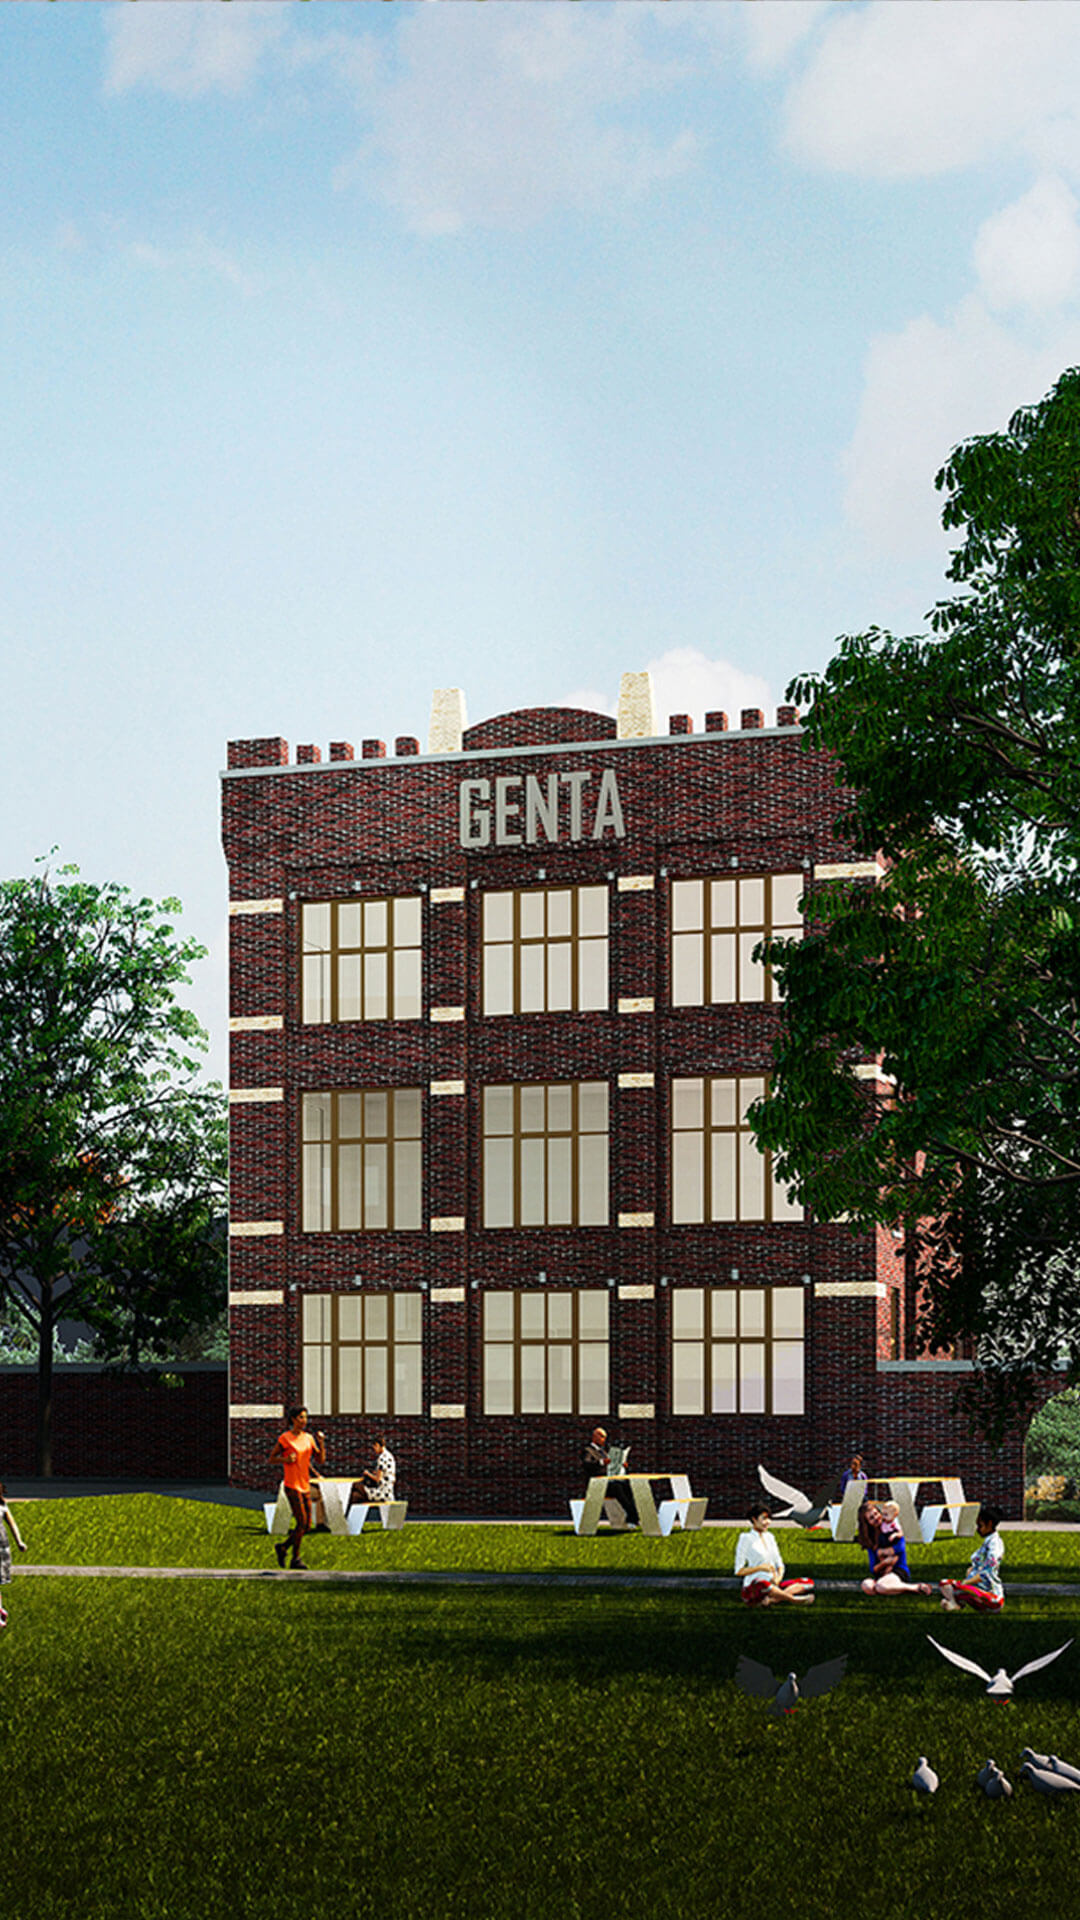 Nieuwbouw Tuinen van Genta - Persona - Joan Copijn - mijn huis